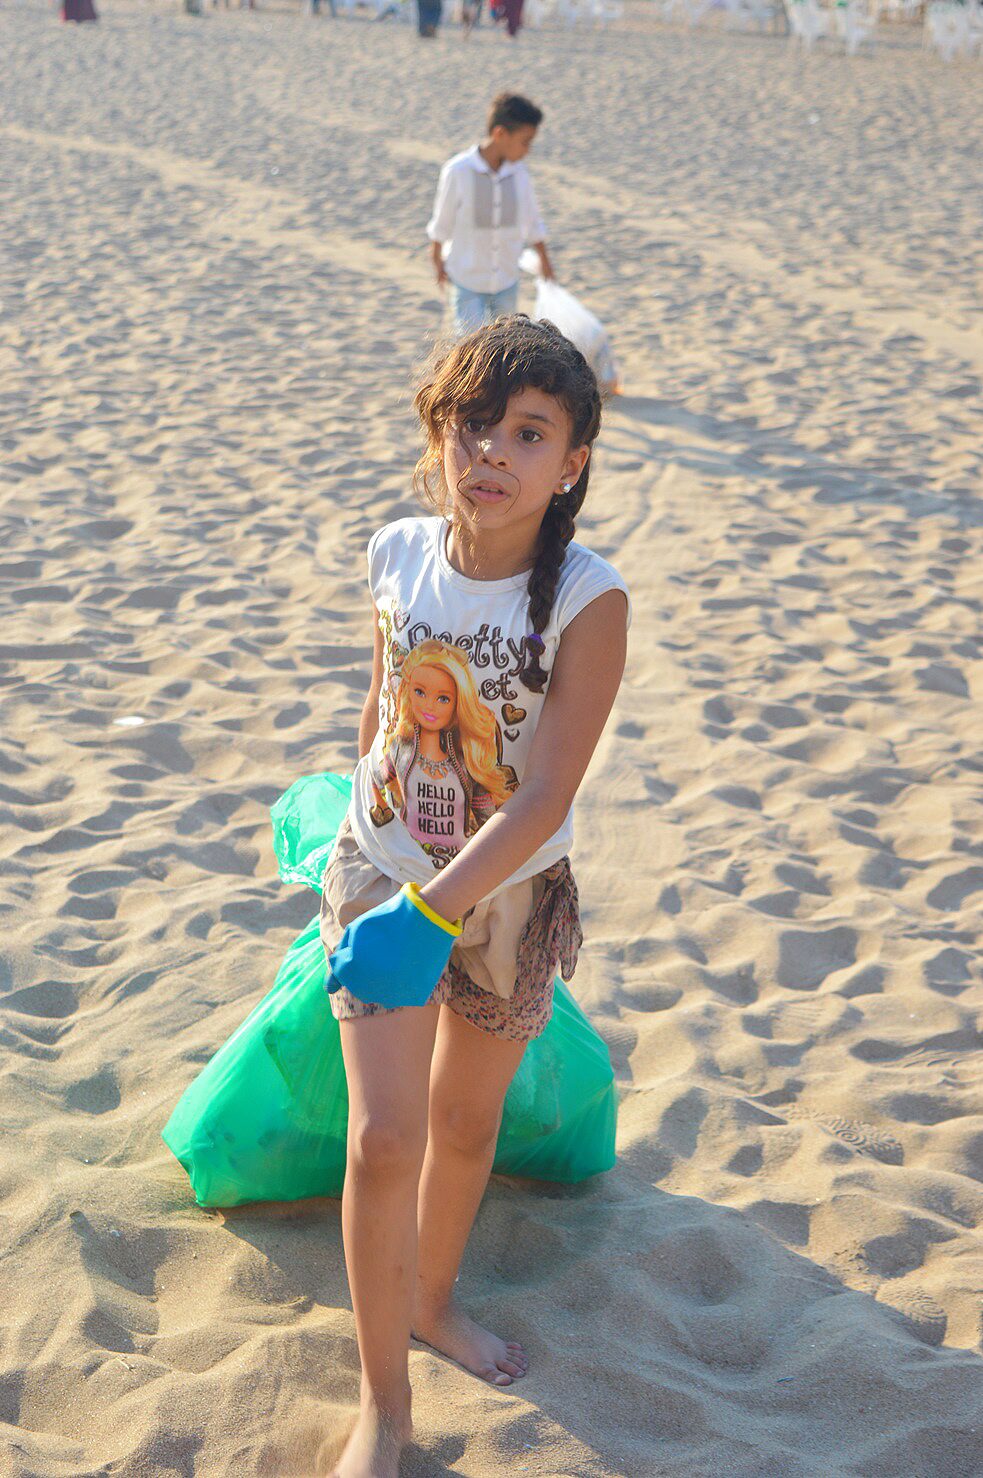 فتاة صغيرة ترتدي قفازات وتحمل كيساً بلاستيكياً مملوءاً بالنفايات تتجه صوب الكاميرا.